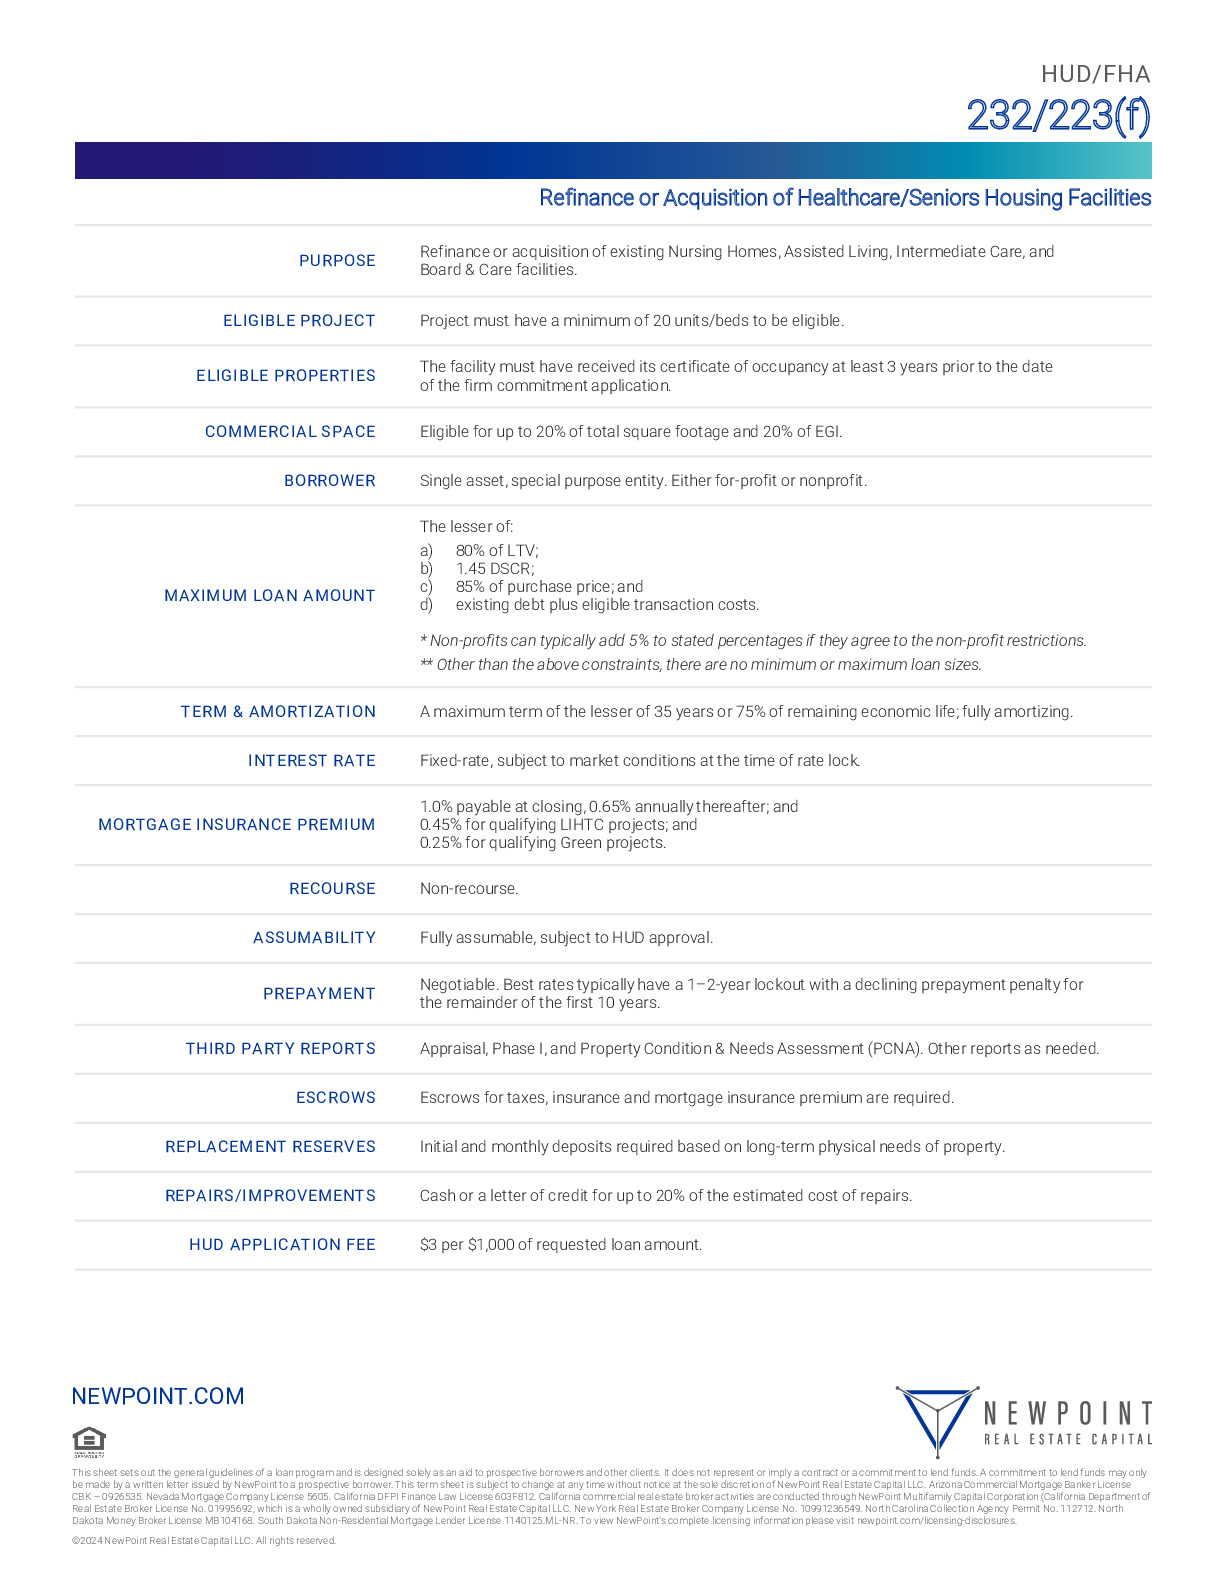 NewPoint_HUD-FHA_232-223(f).pdf